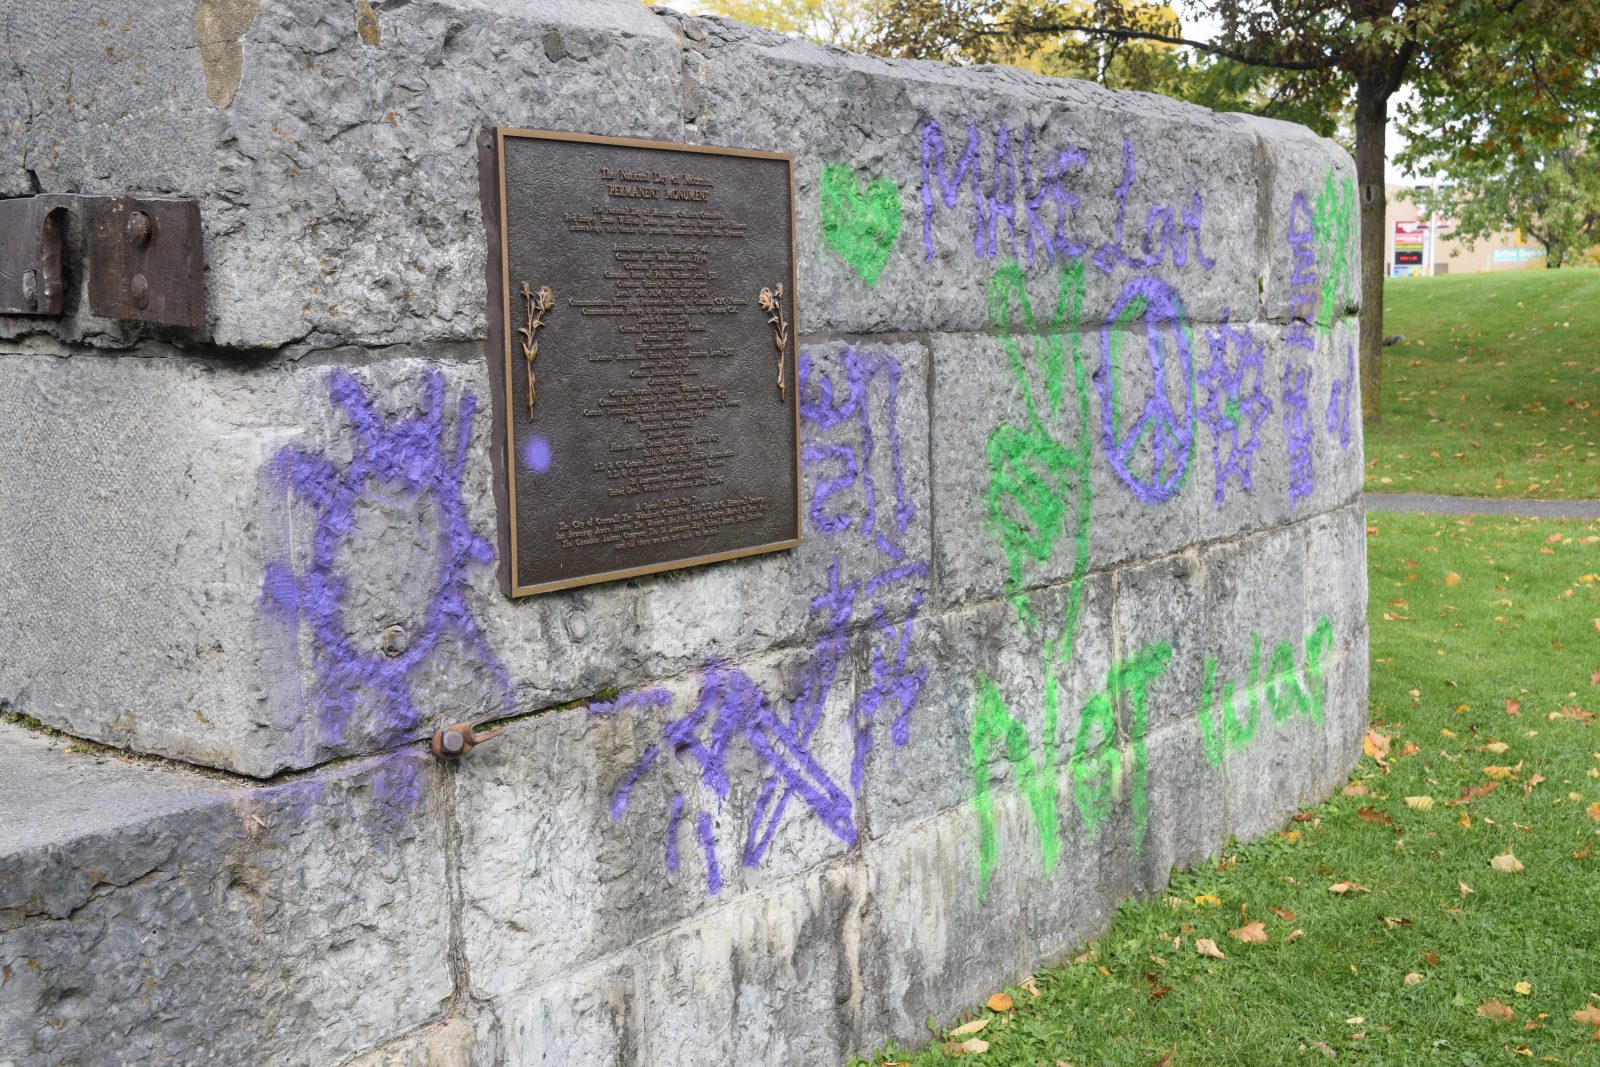 Cornwall workers memorial vandalized